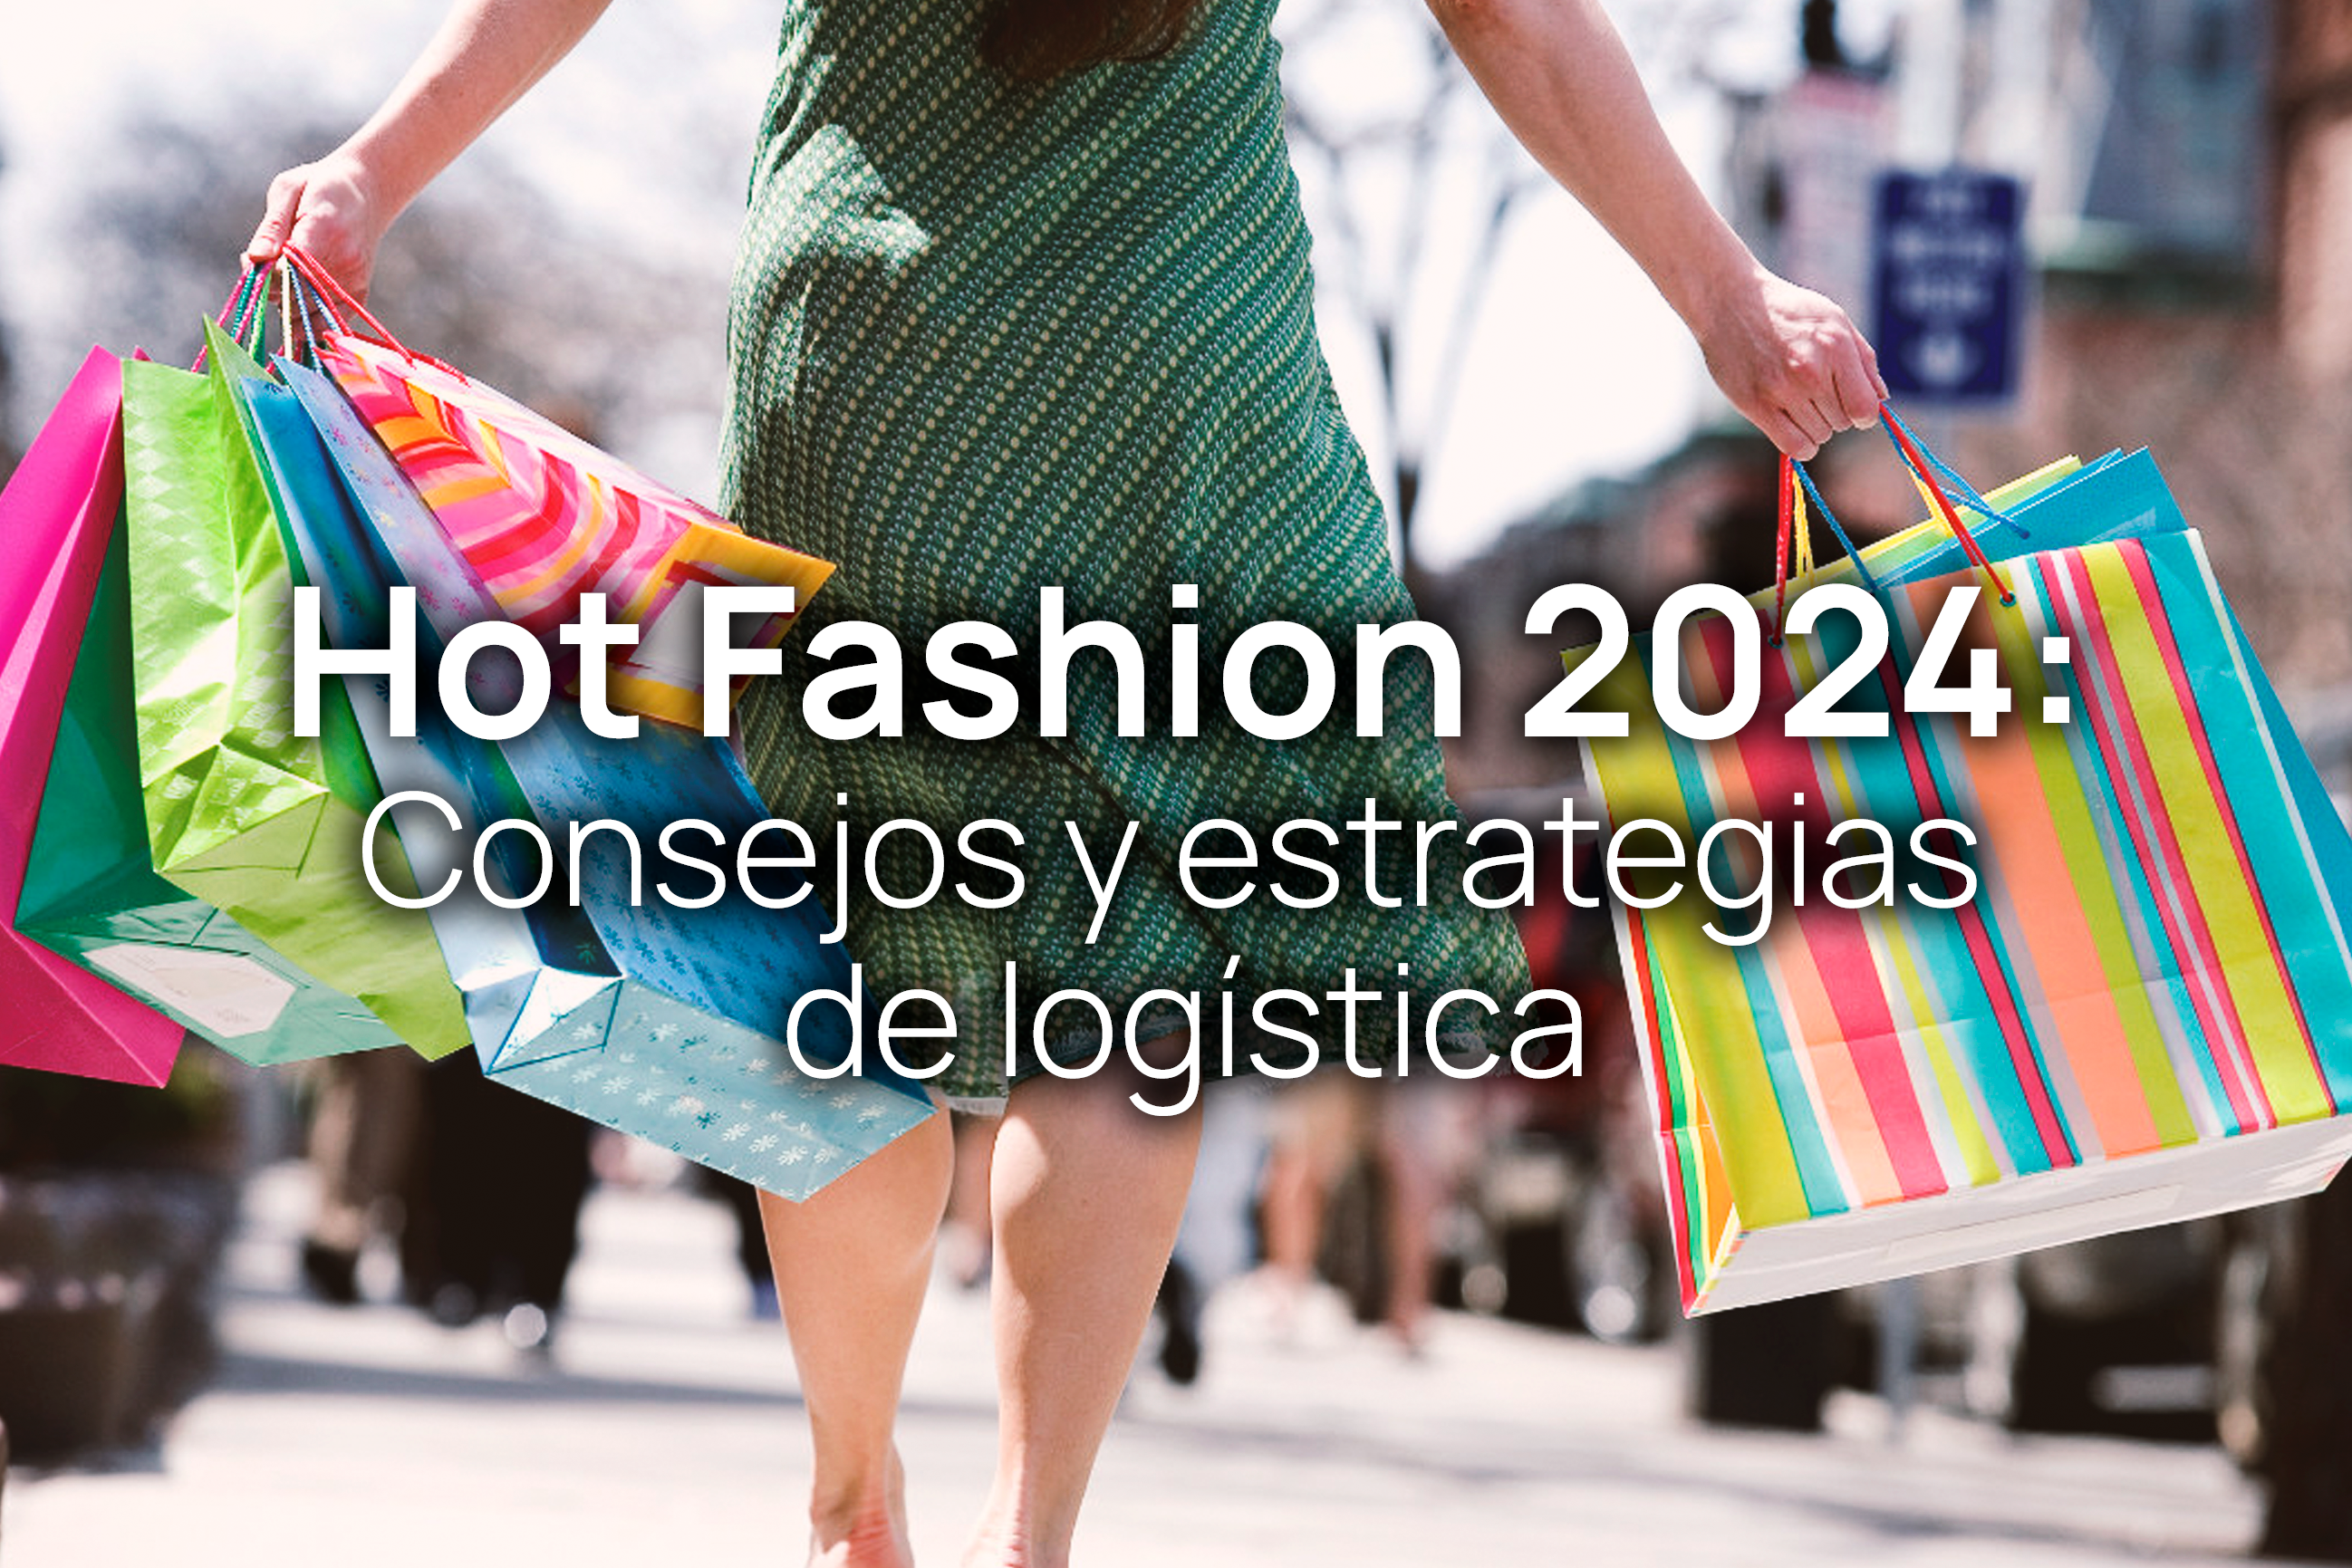 Hot Fashion 2024 Estrategias y consejos de logística